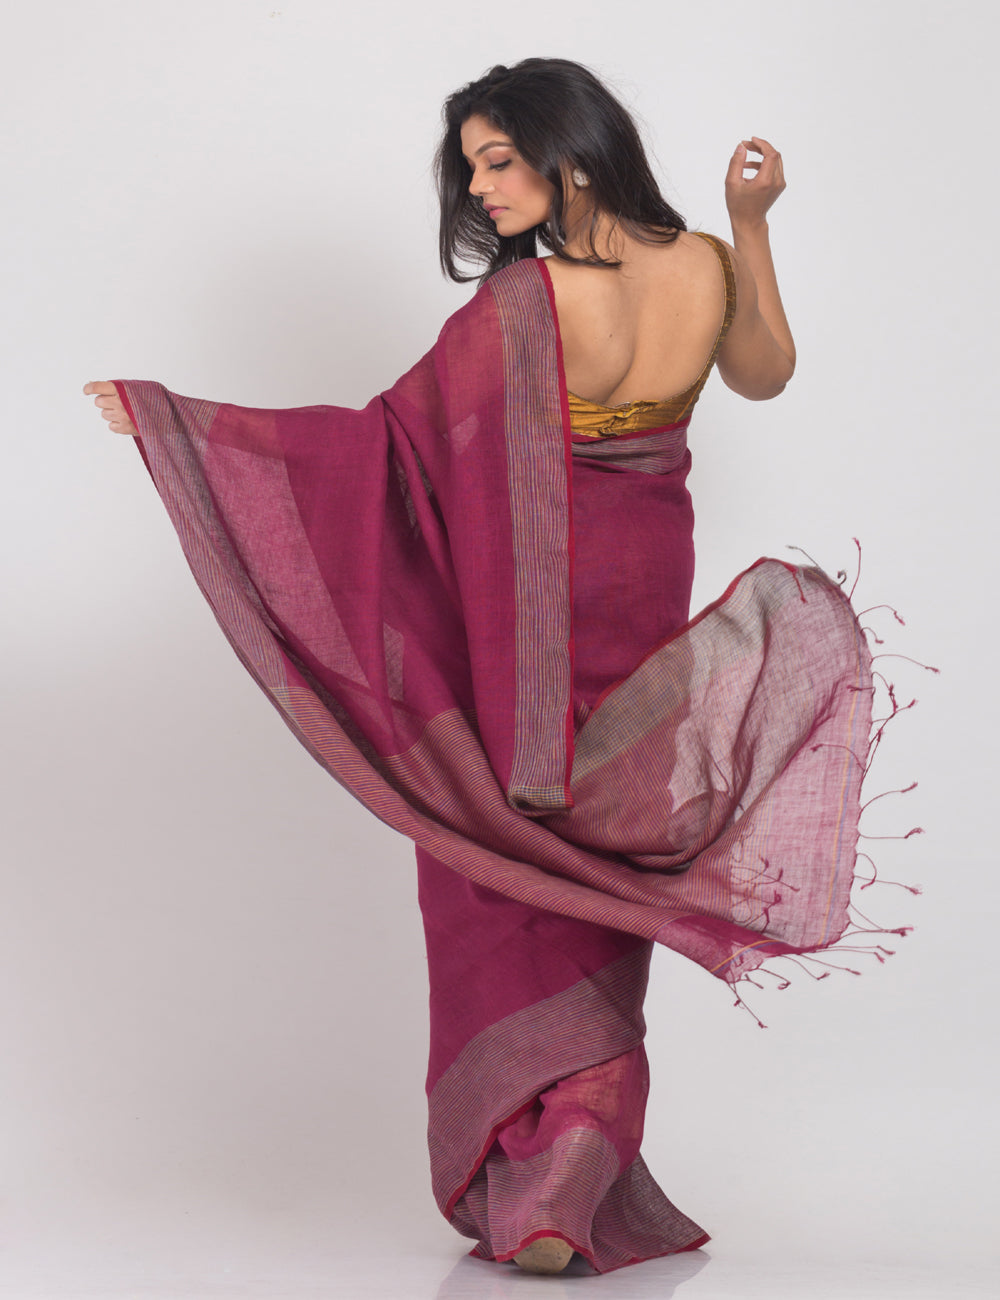 Rose maroon handwoven linen sari